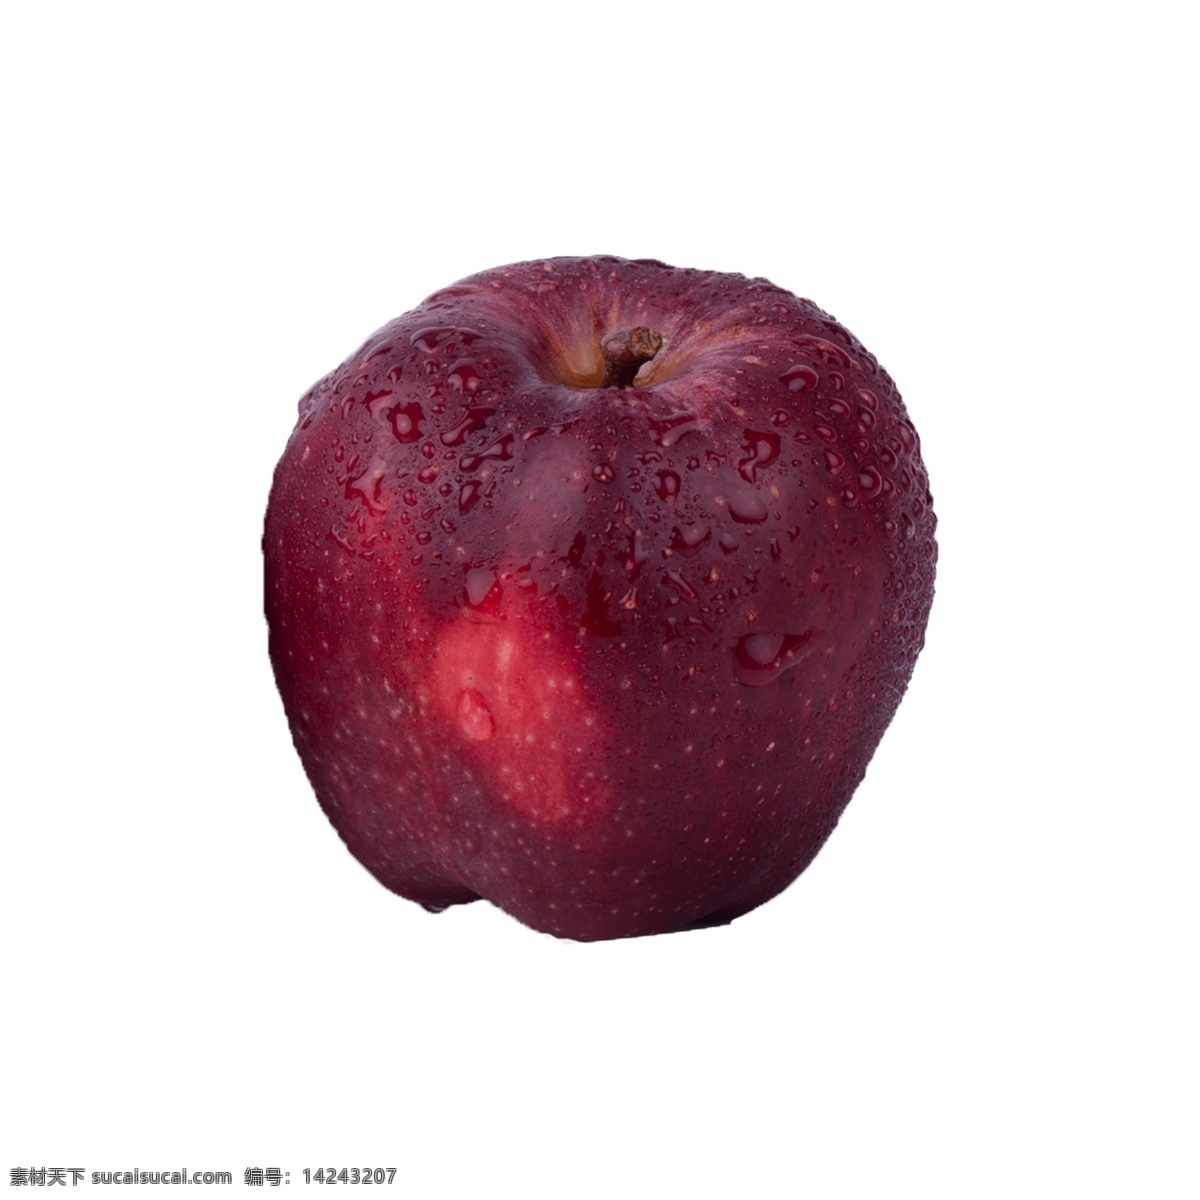 红苹果 免 抠 苹果 红富士 红苹果免抠 新鲜 水果 甘甜 营养 多汁 维生素 红色 摆拍 实拍